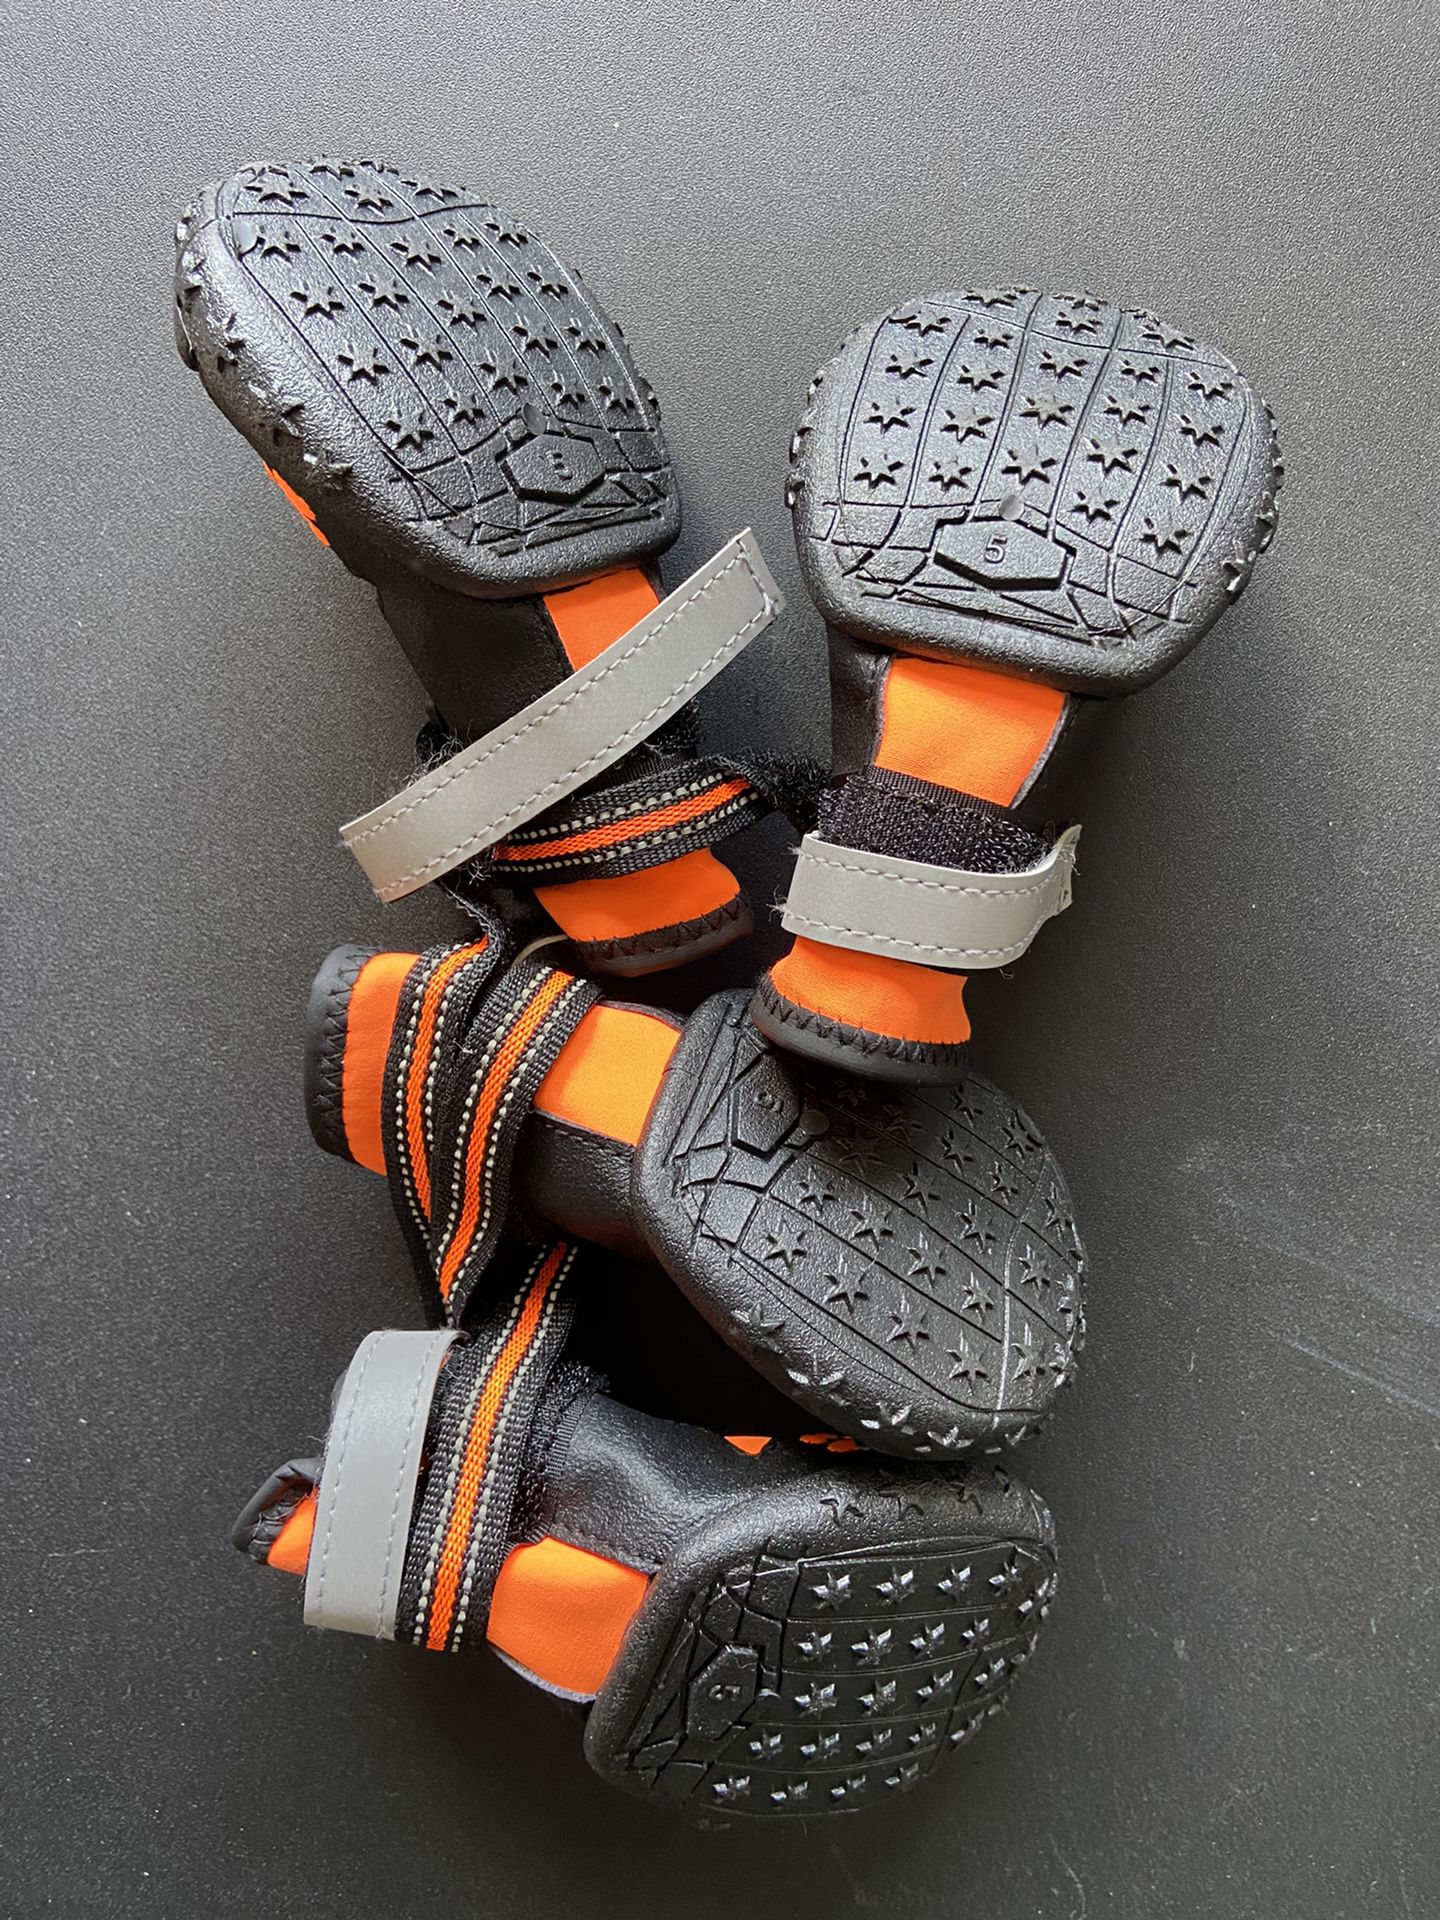 Orange & Black Doggie Boots/Shoes Size 7